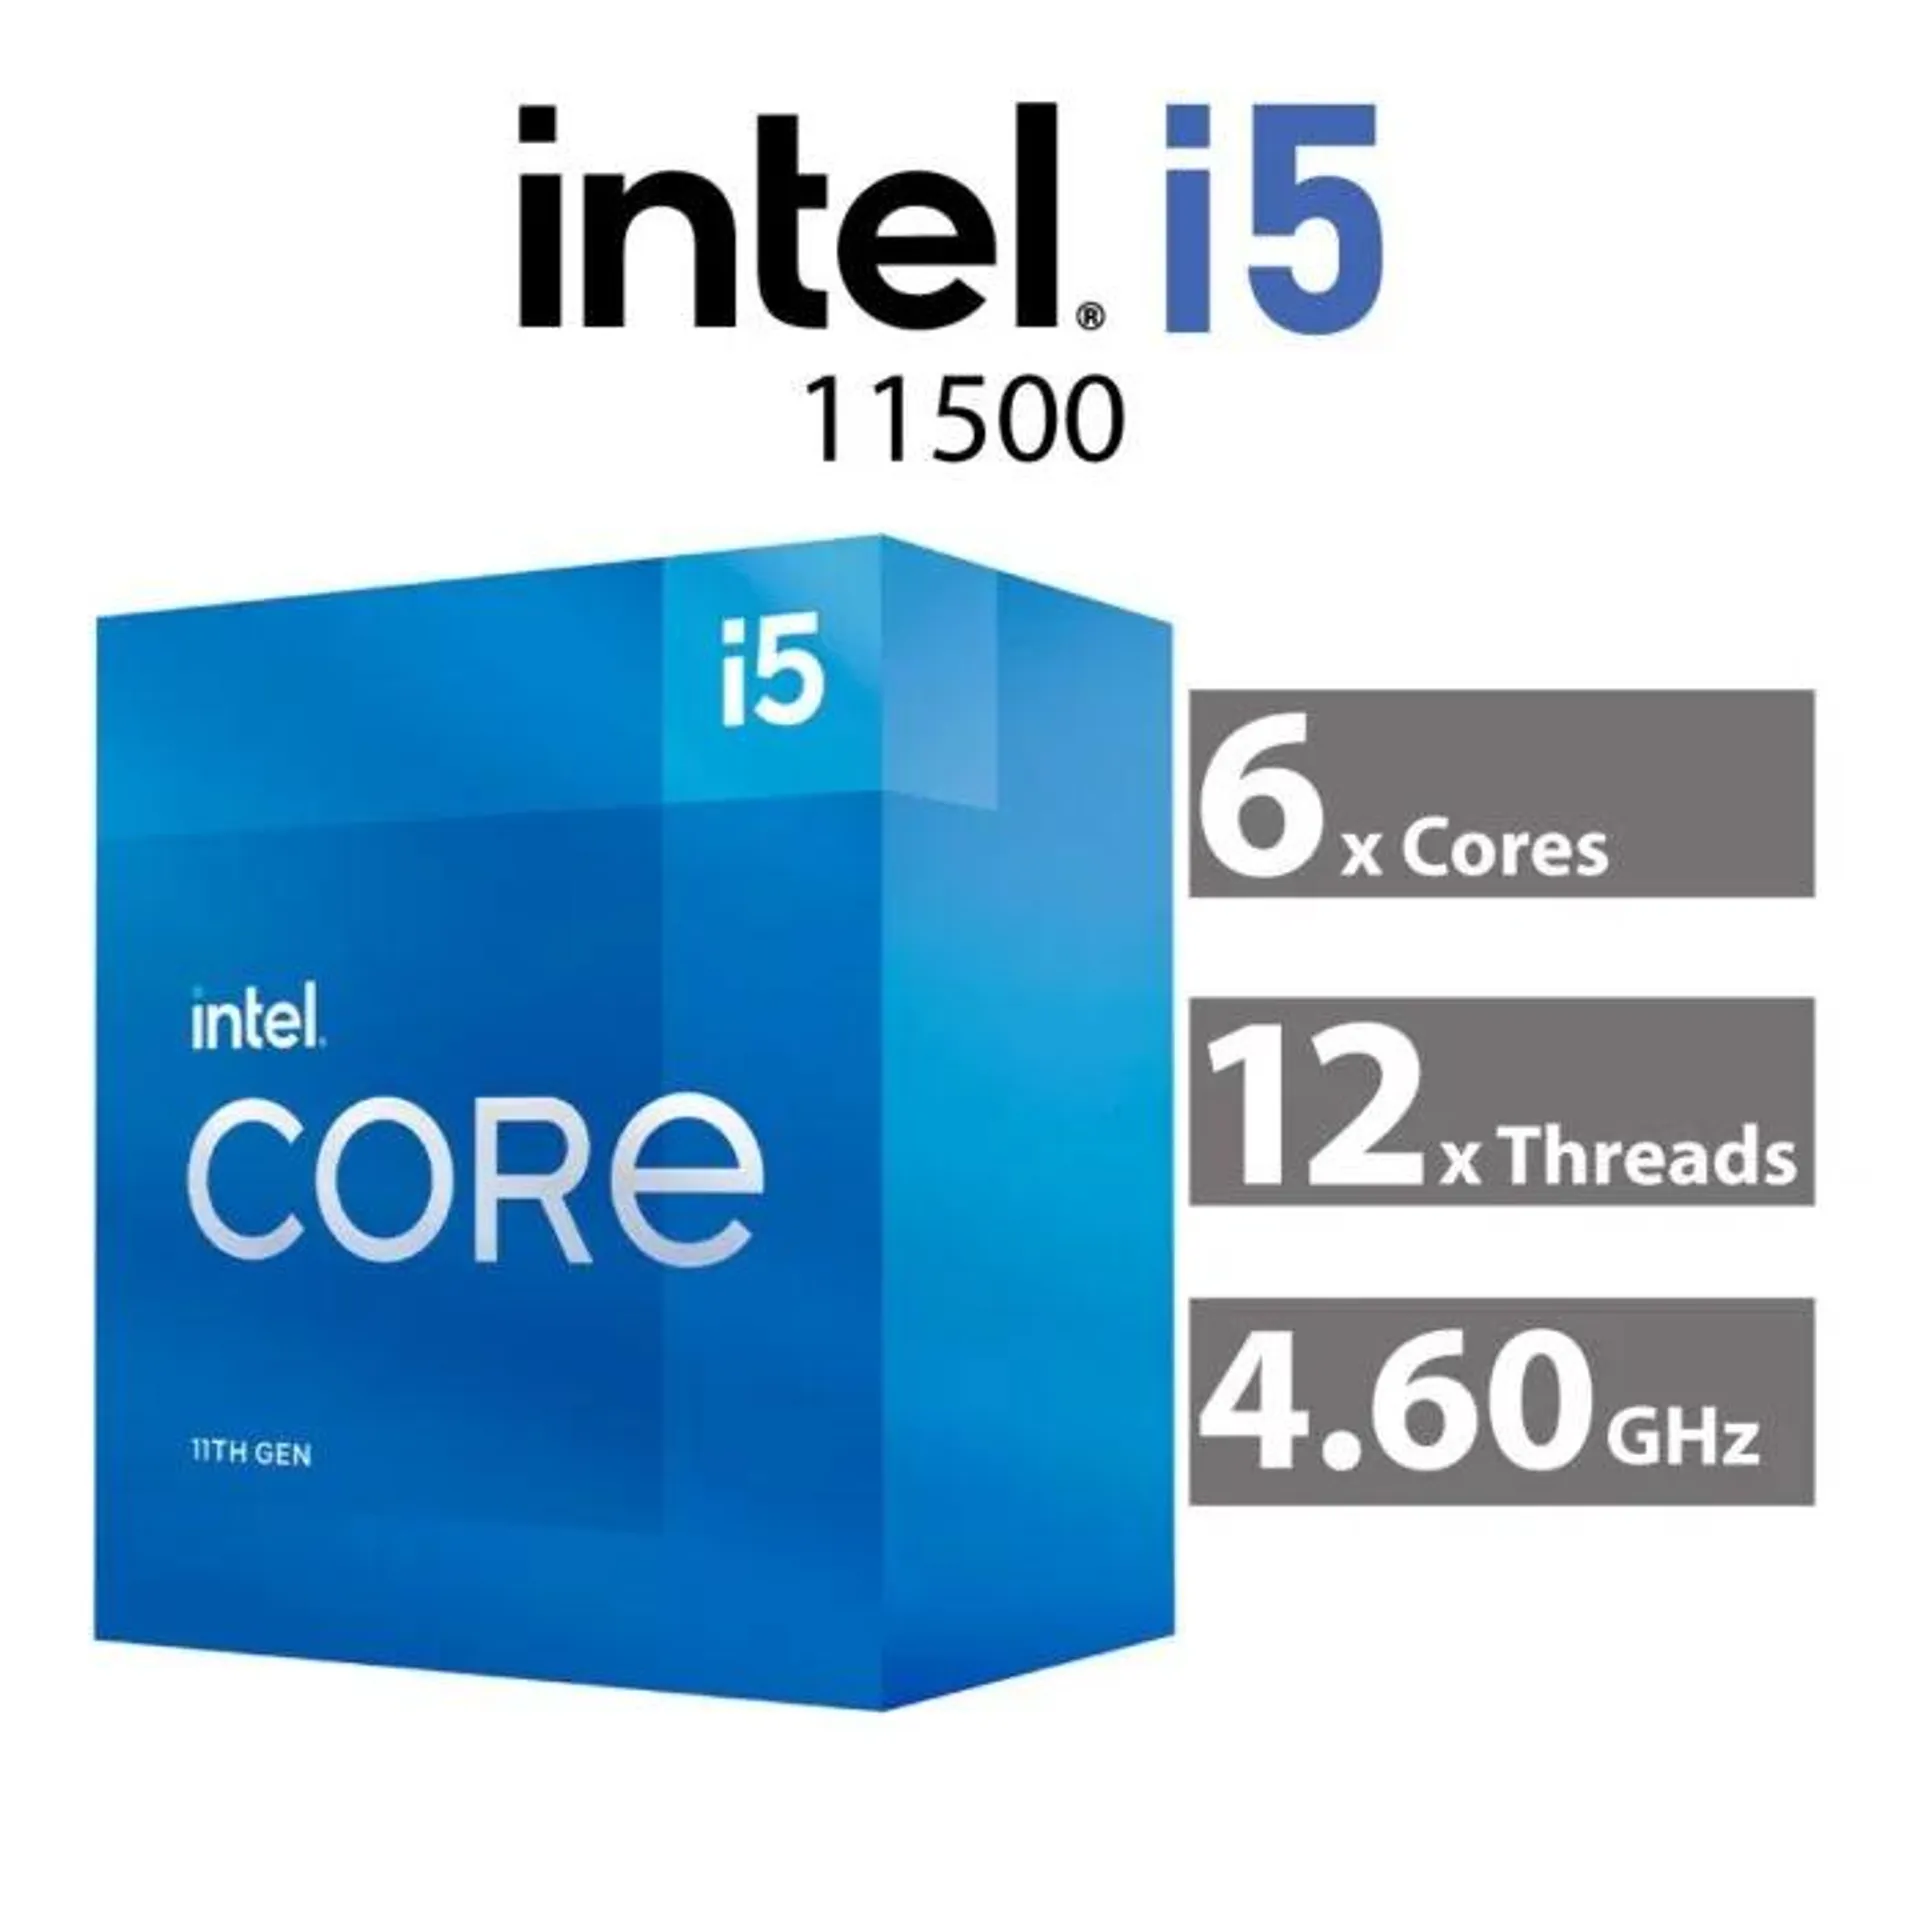 Intel Core i5-11500 Rocket Lake 6-Core 2.70GHz LGA1200 65W BX8070811500 Desktop Processor